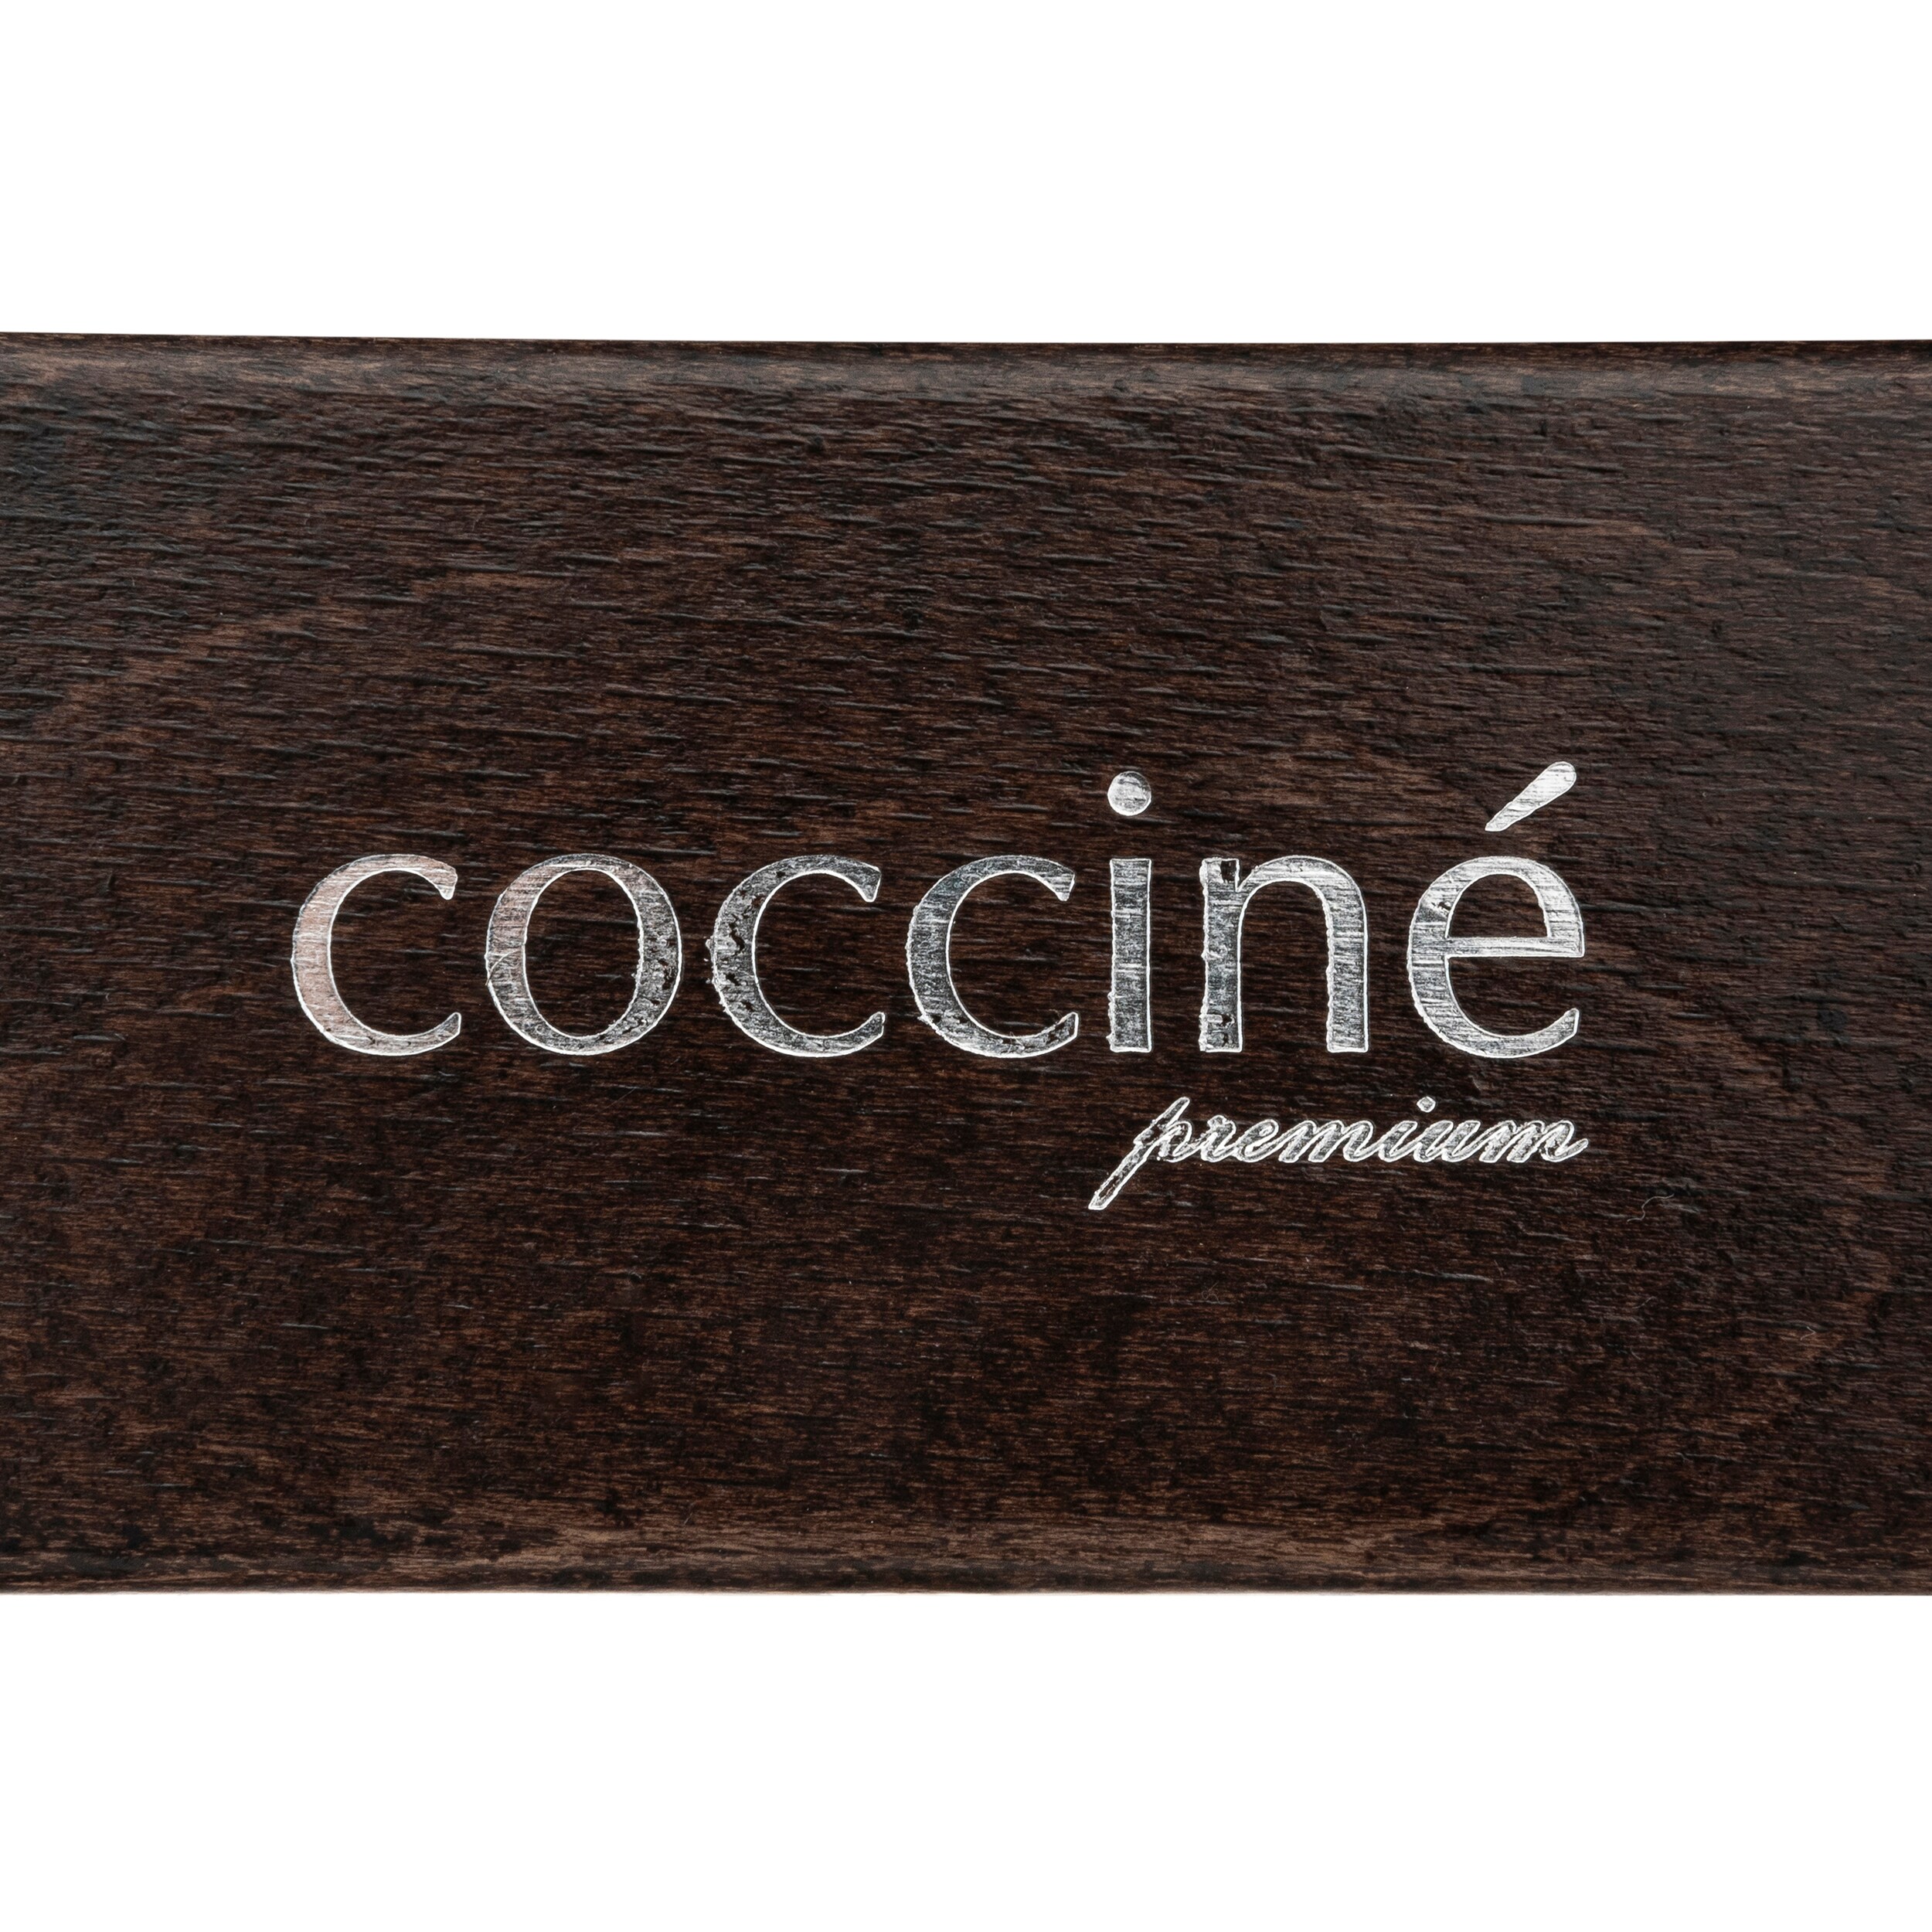 Szczotka Coccine Premium do polerowania - włosie końskie